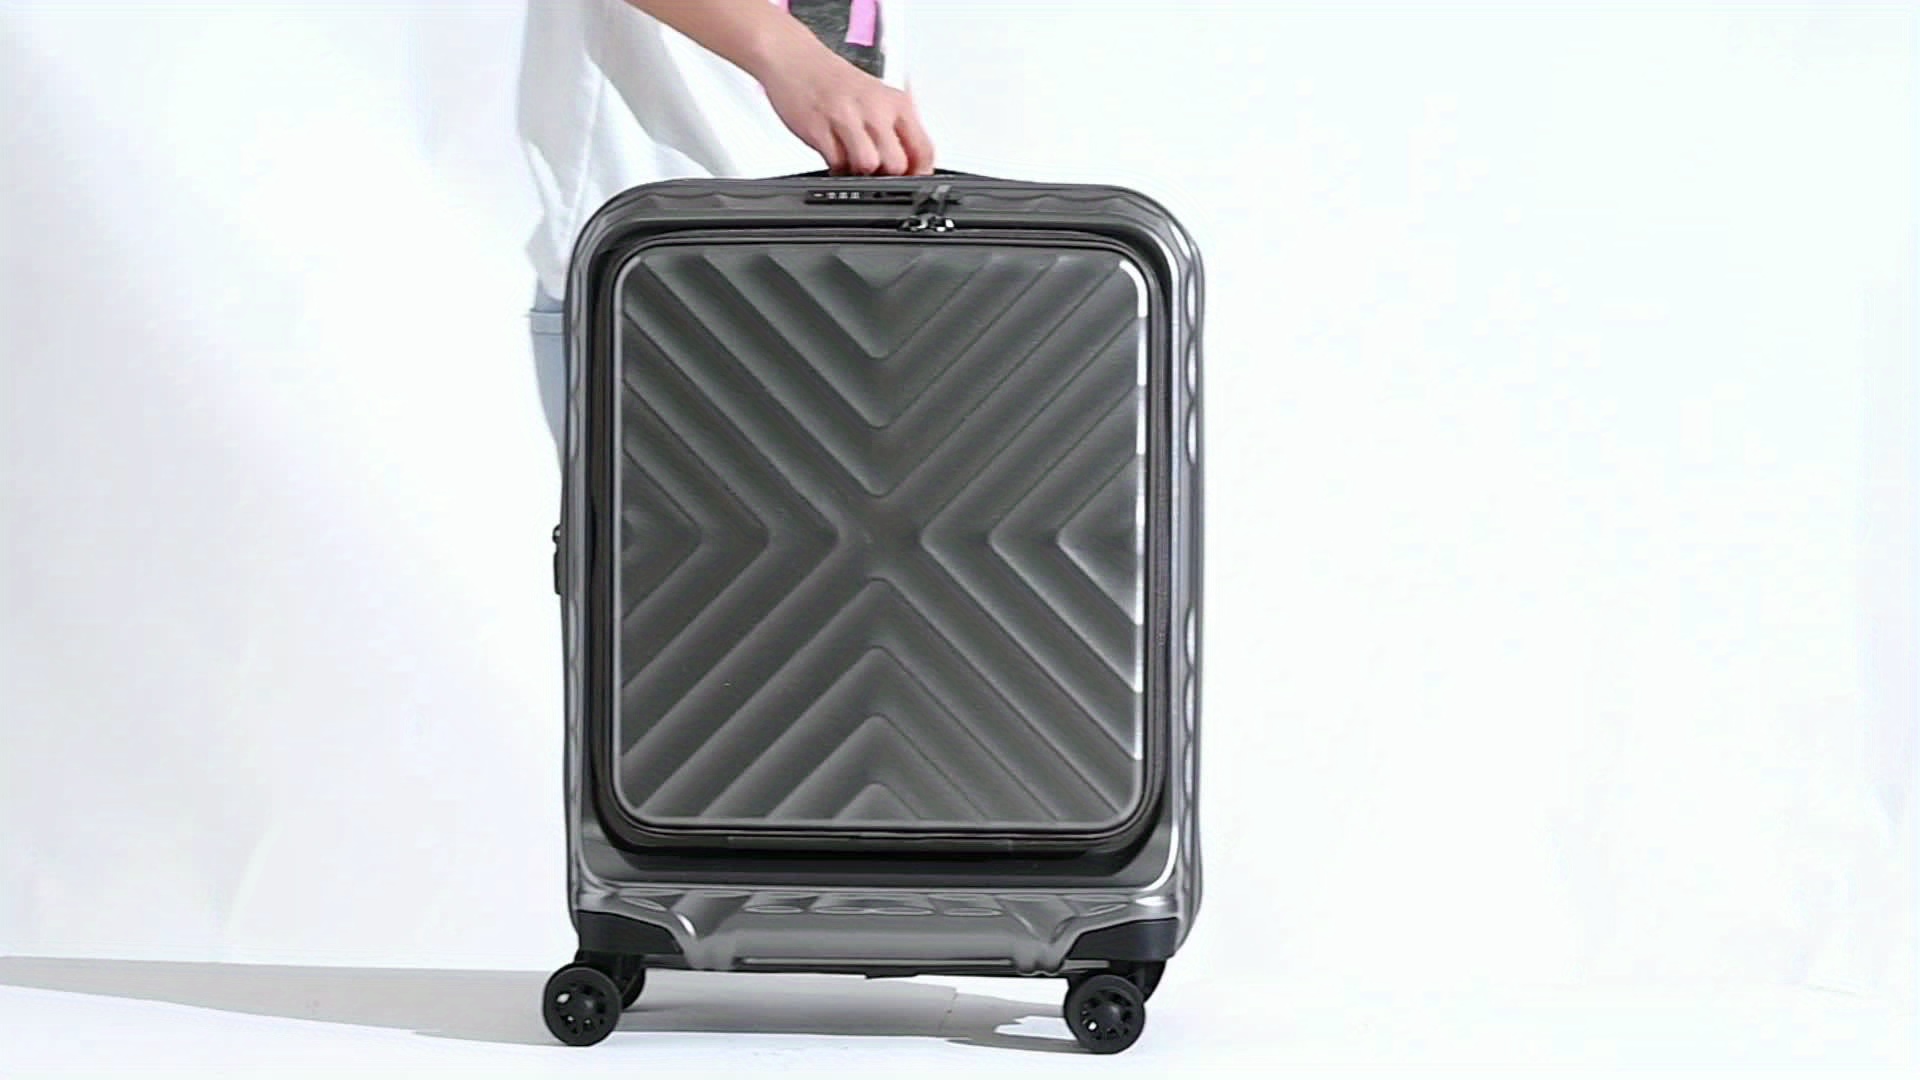 maleta 40 20 30 – Compra maleta 40 20 30 con envío gratis en AliExpress  version